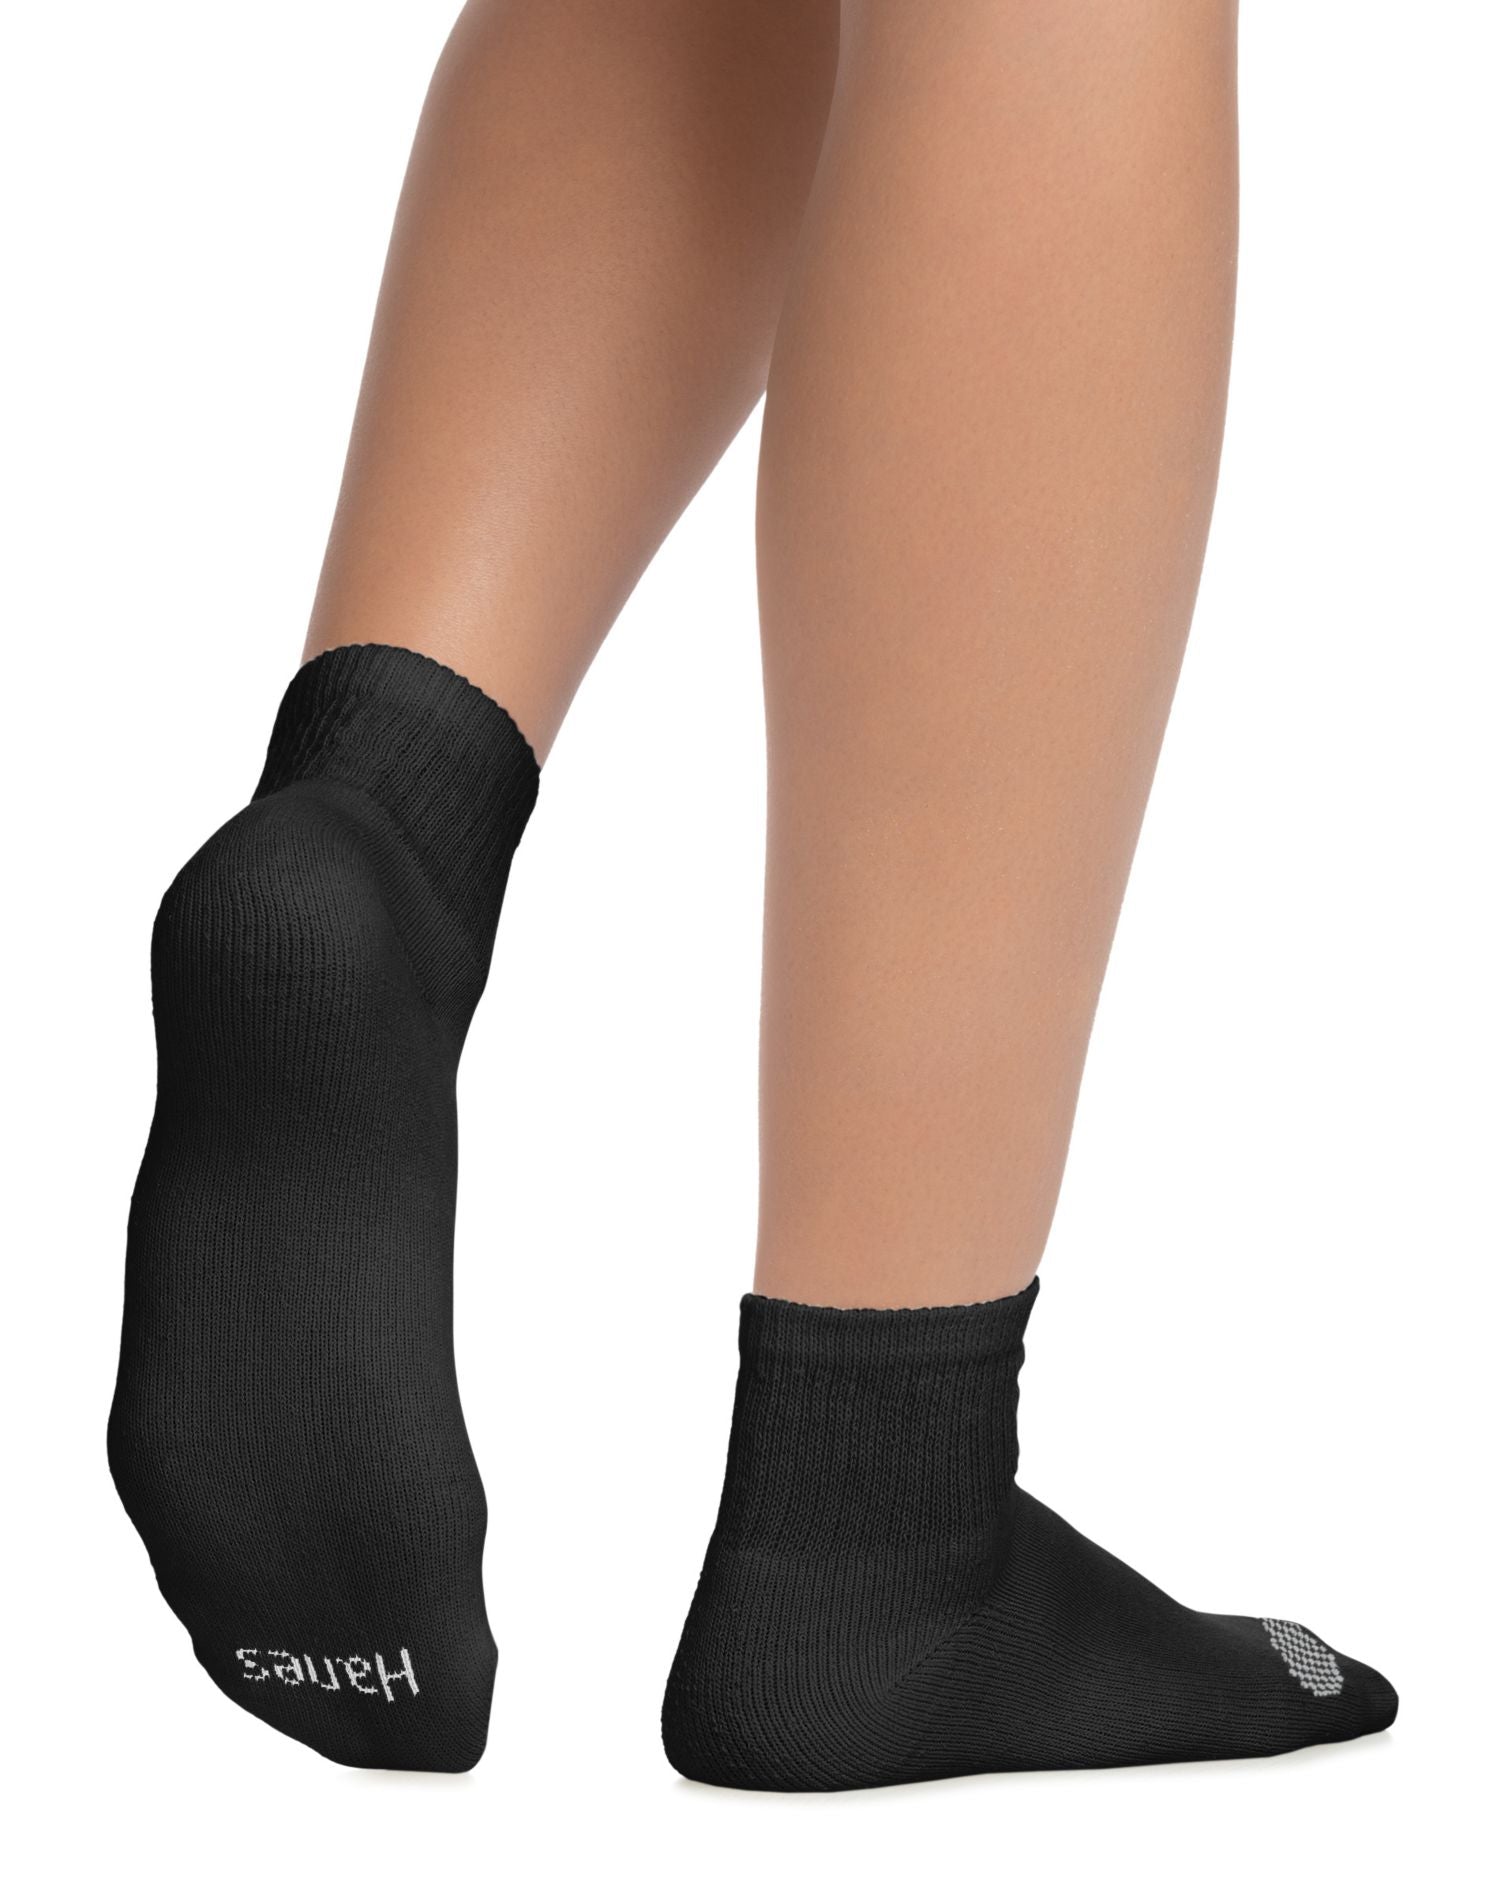 681V6 - Hanes Womens Cool Comfort Ankle Socks 6-Pack